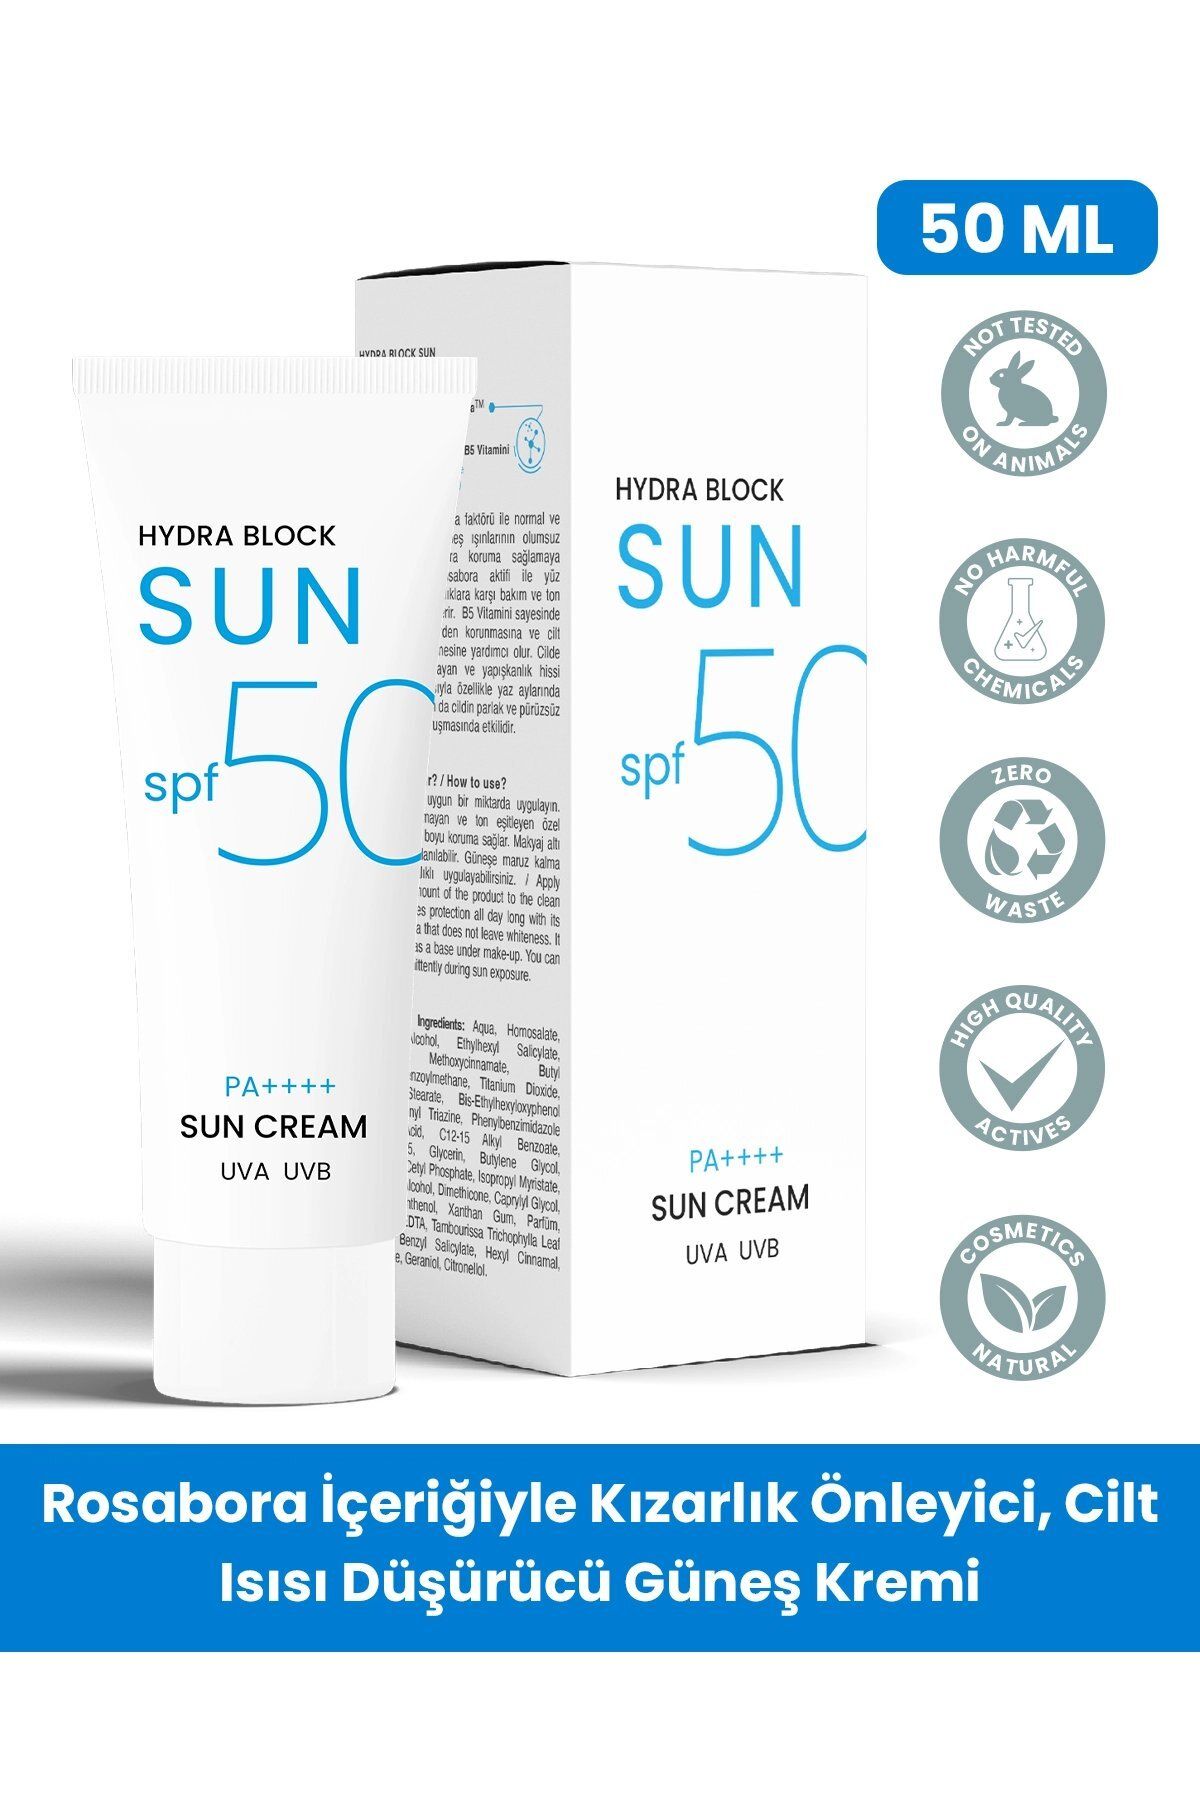 PROCSIN کرم ضد آفتاب Hydra Block SUN Spf 50+ کاهش قرمزی و التهاب پوست 50میل